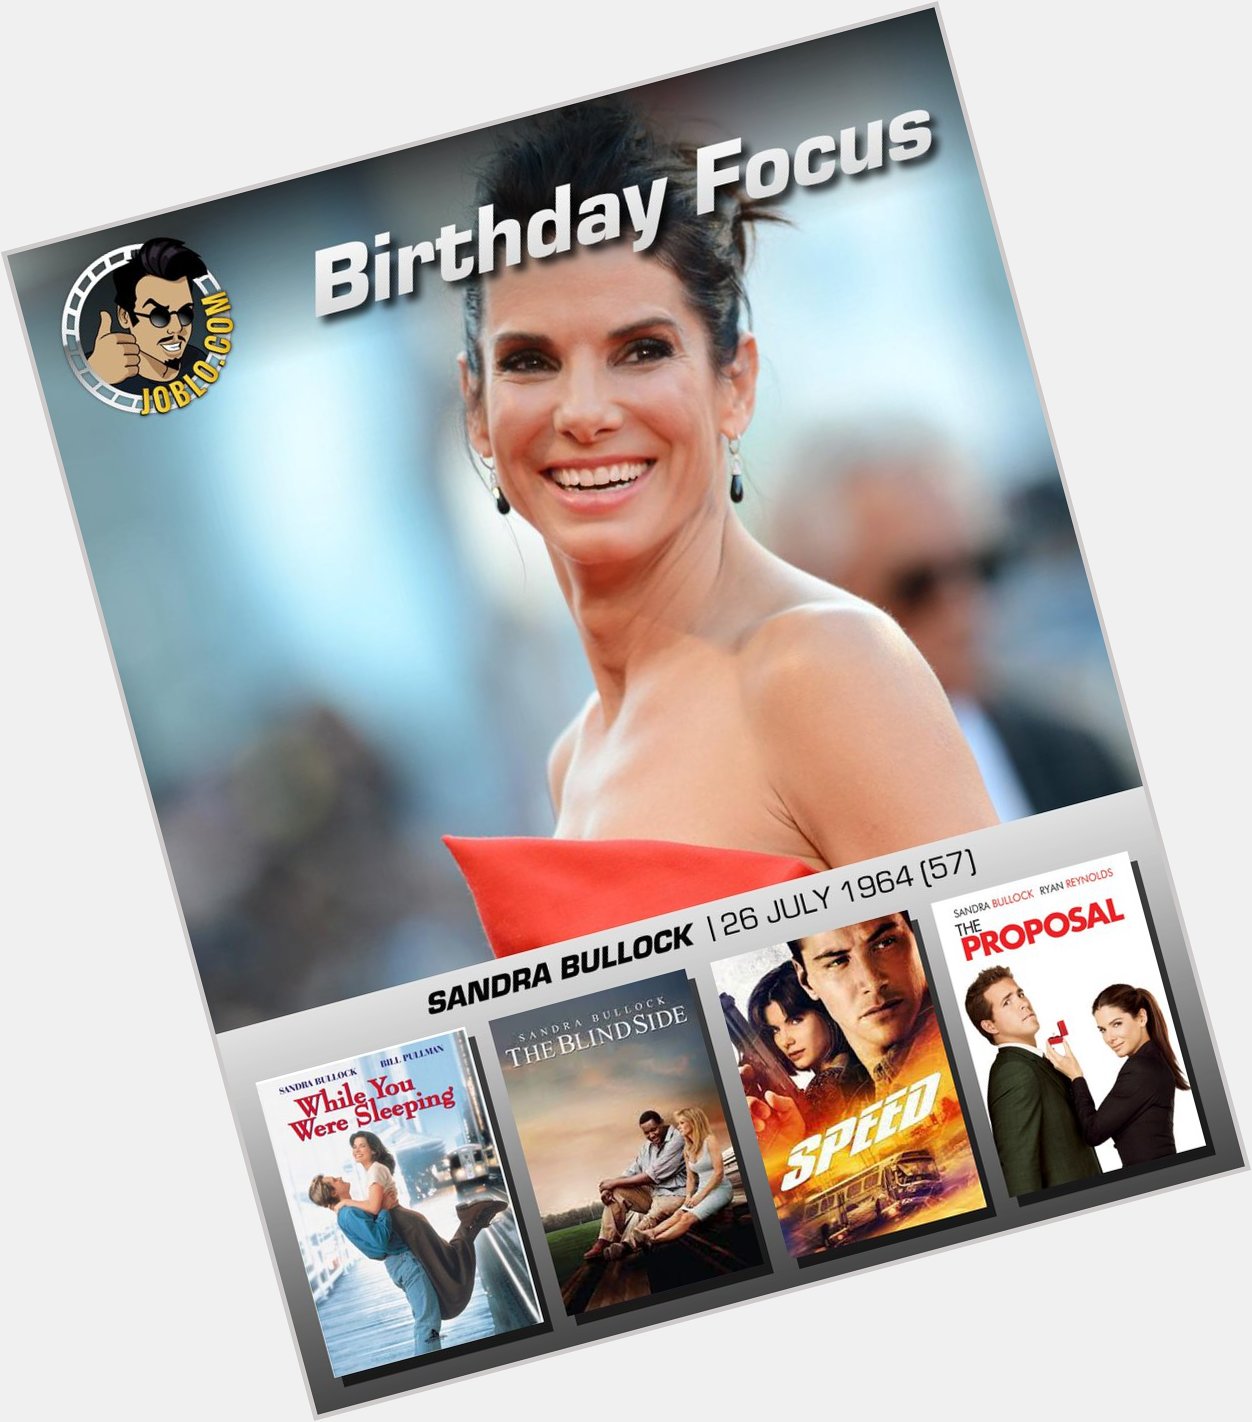 Wishing Sandra Bullock a very happy 57th birthday! 